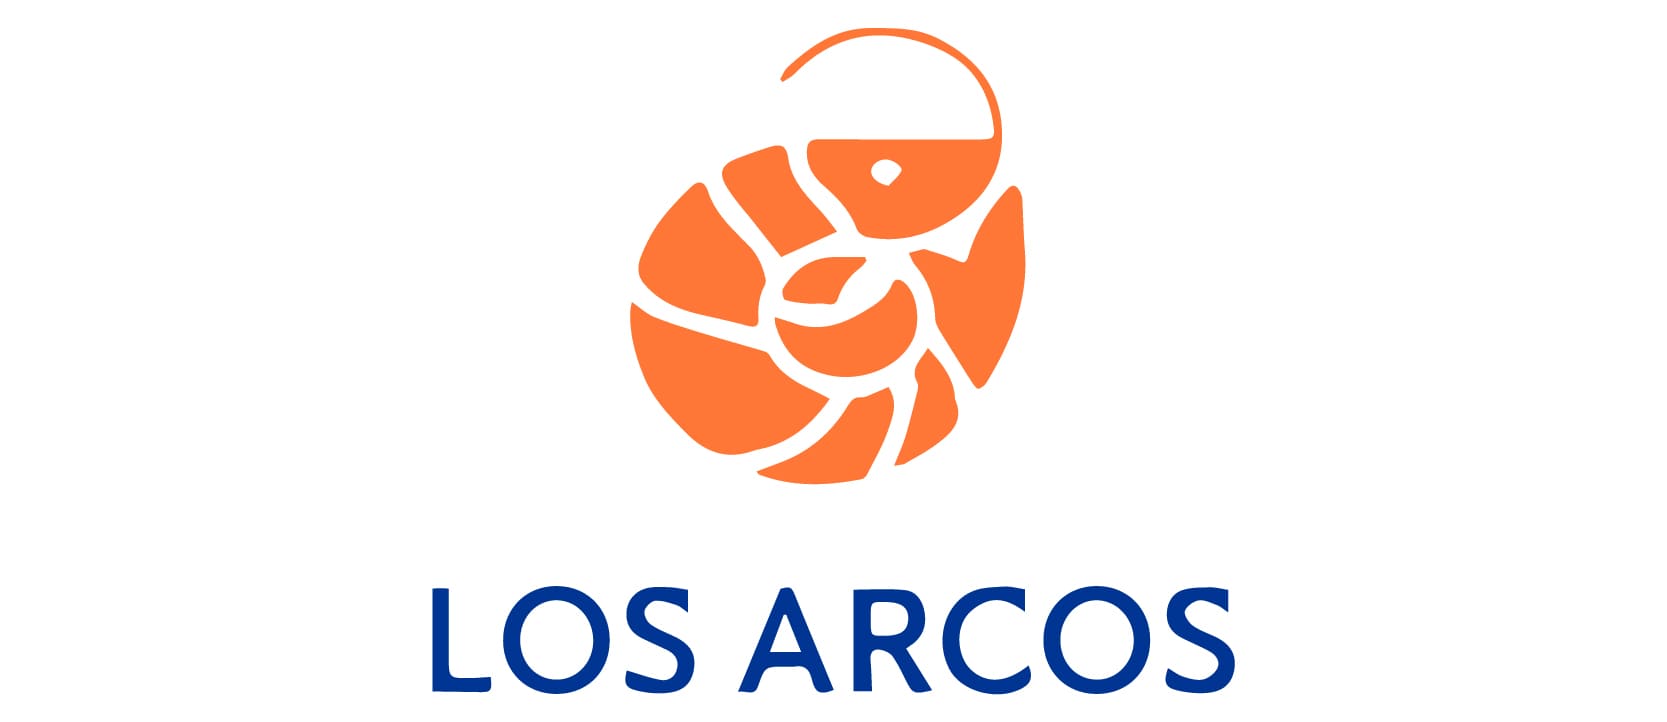 Logotipo Los arcos